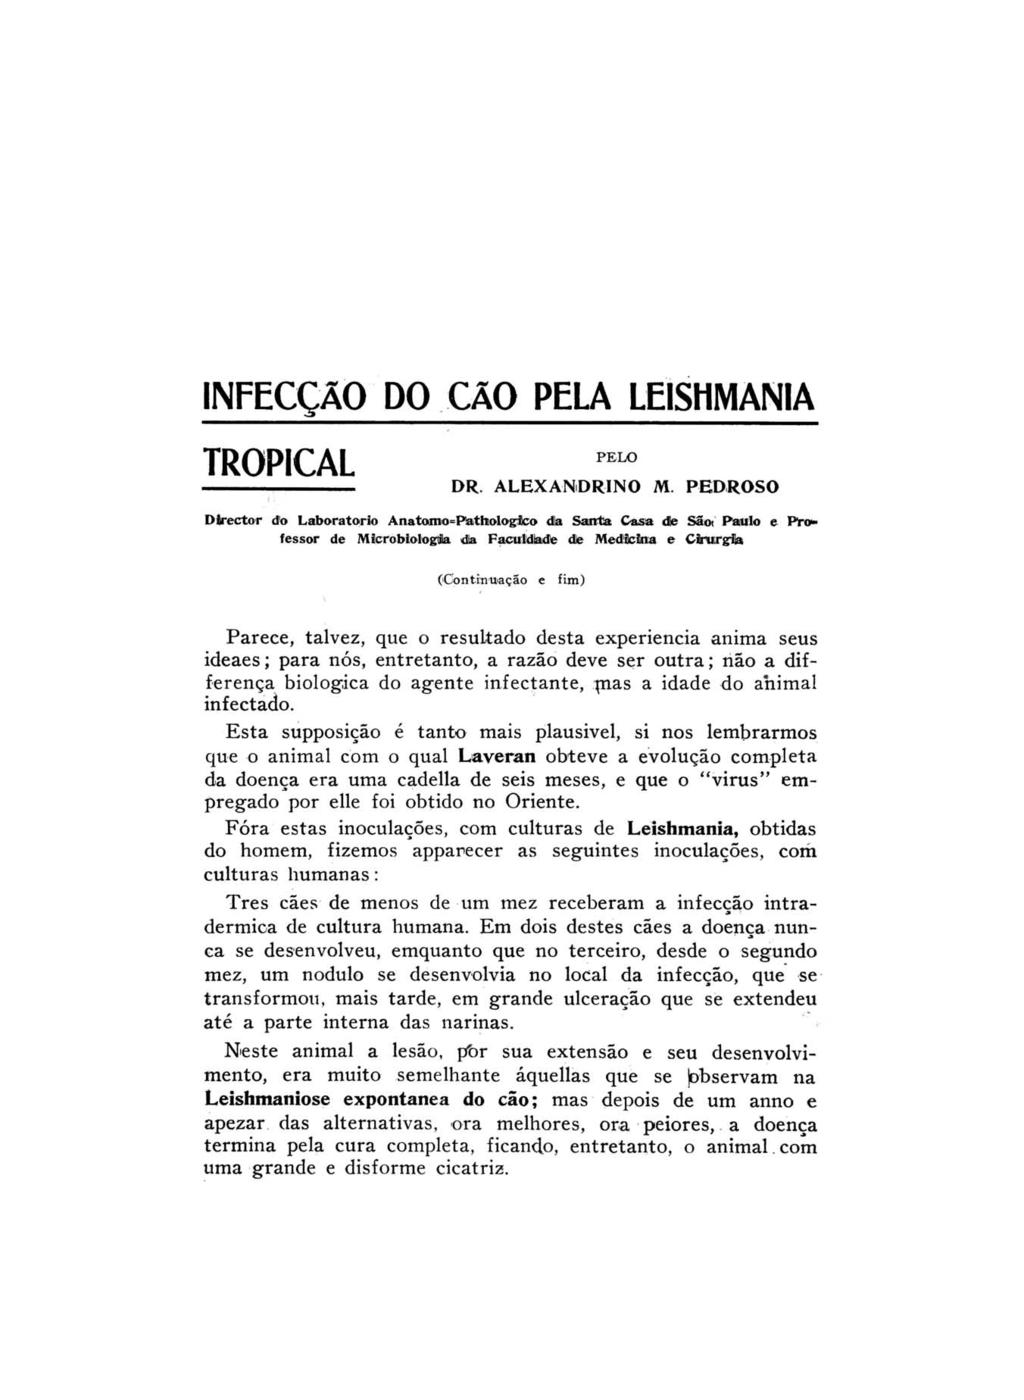 INFECCÃO DO CÃO PELA LE1SHMAN1A TROPICAL DR.